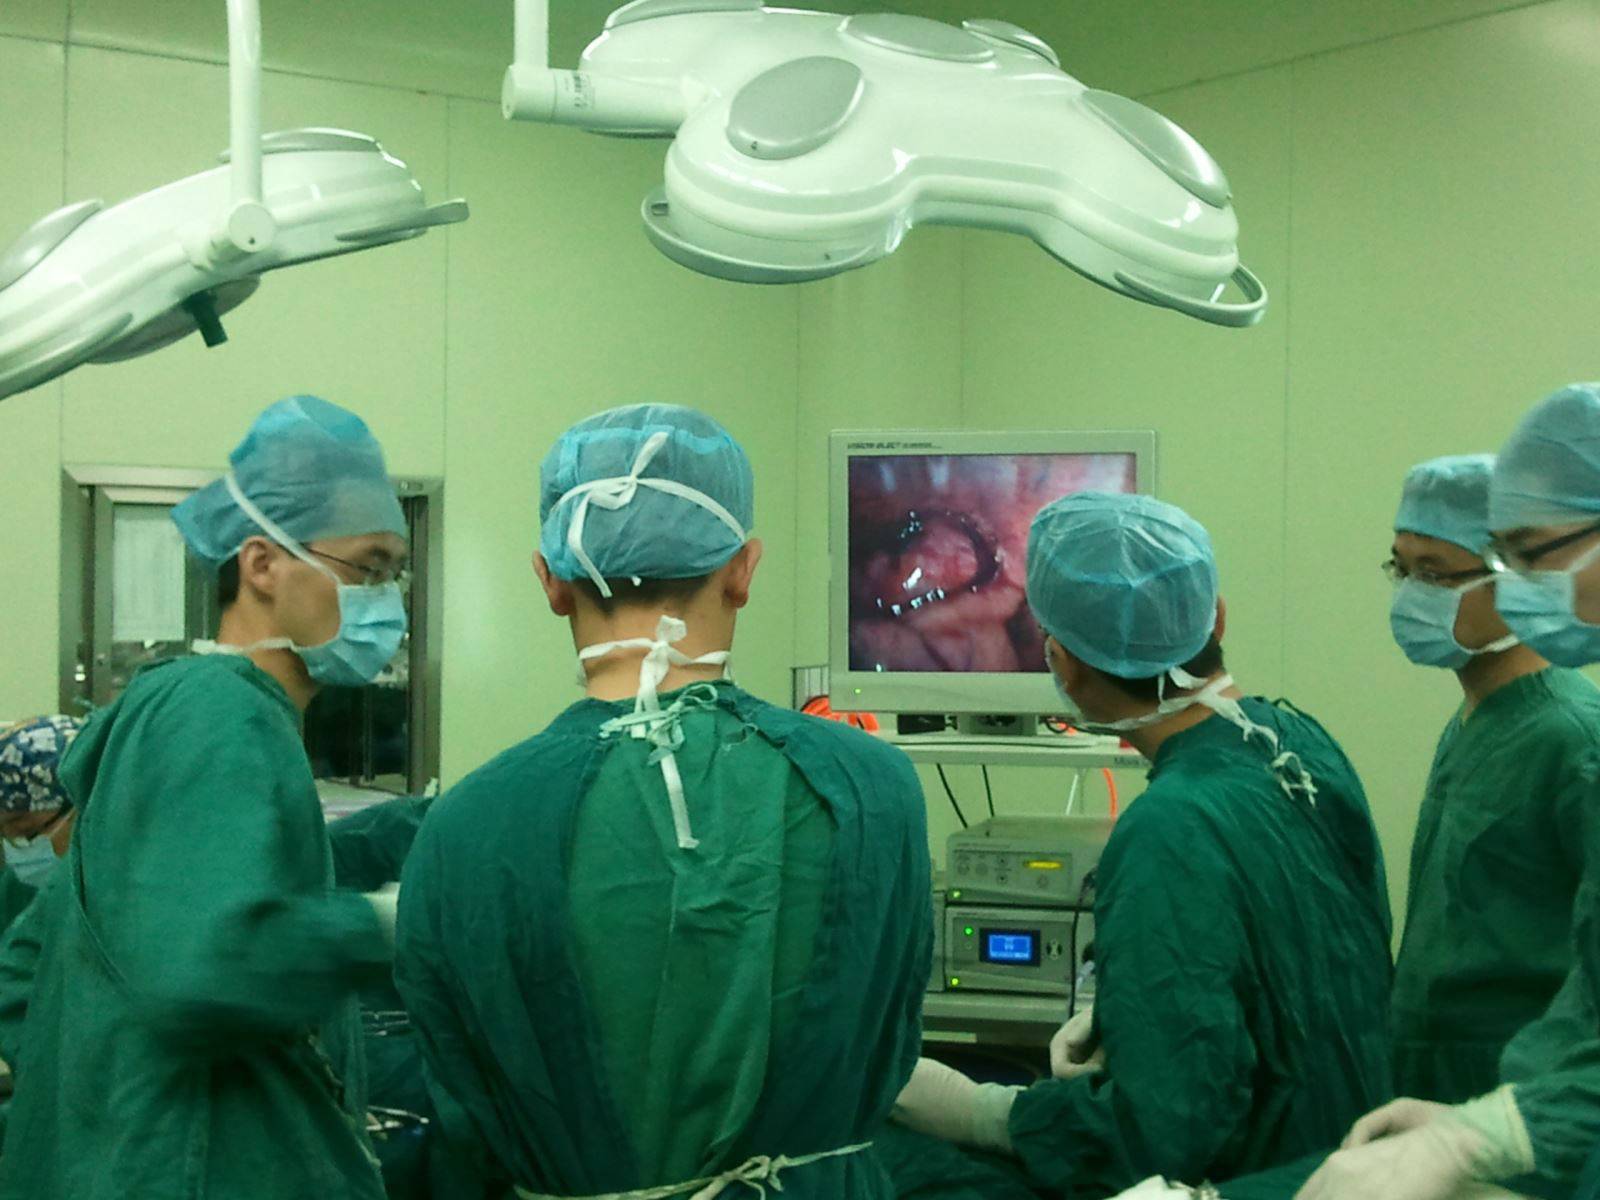 中南大学湘雅医院神经外科主导的复合手术室正式运行-中南大学新闻网门户网站